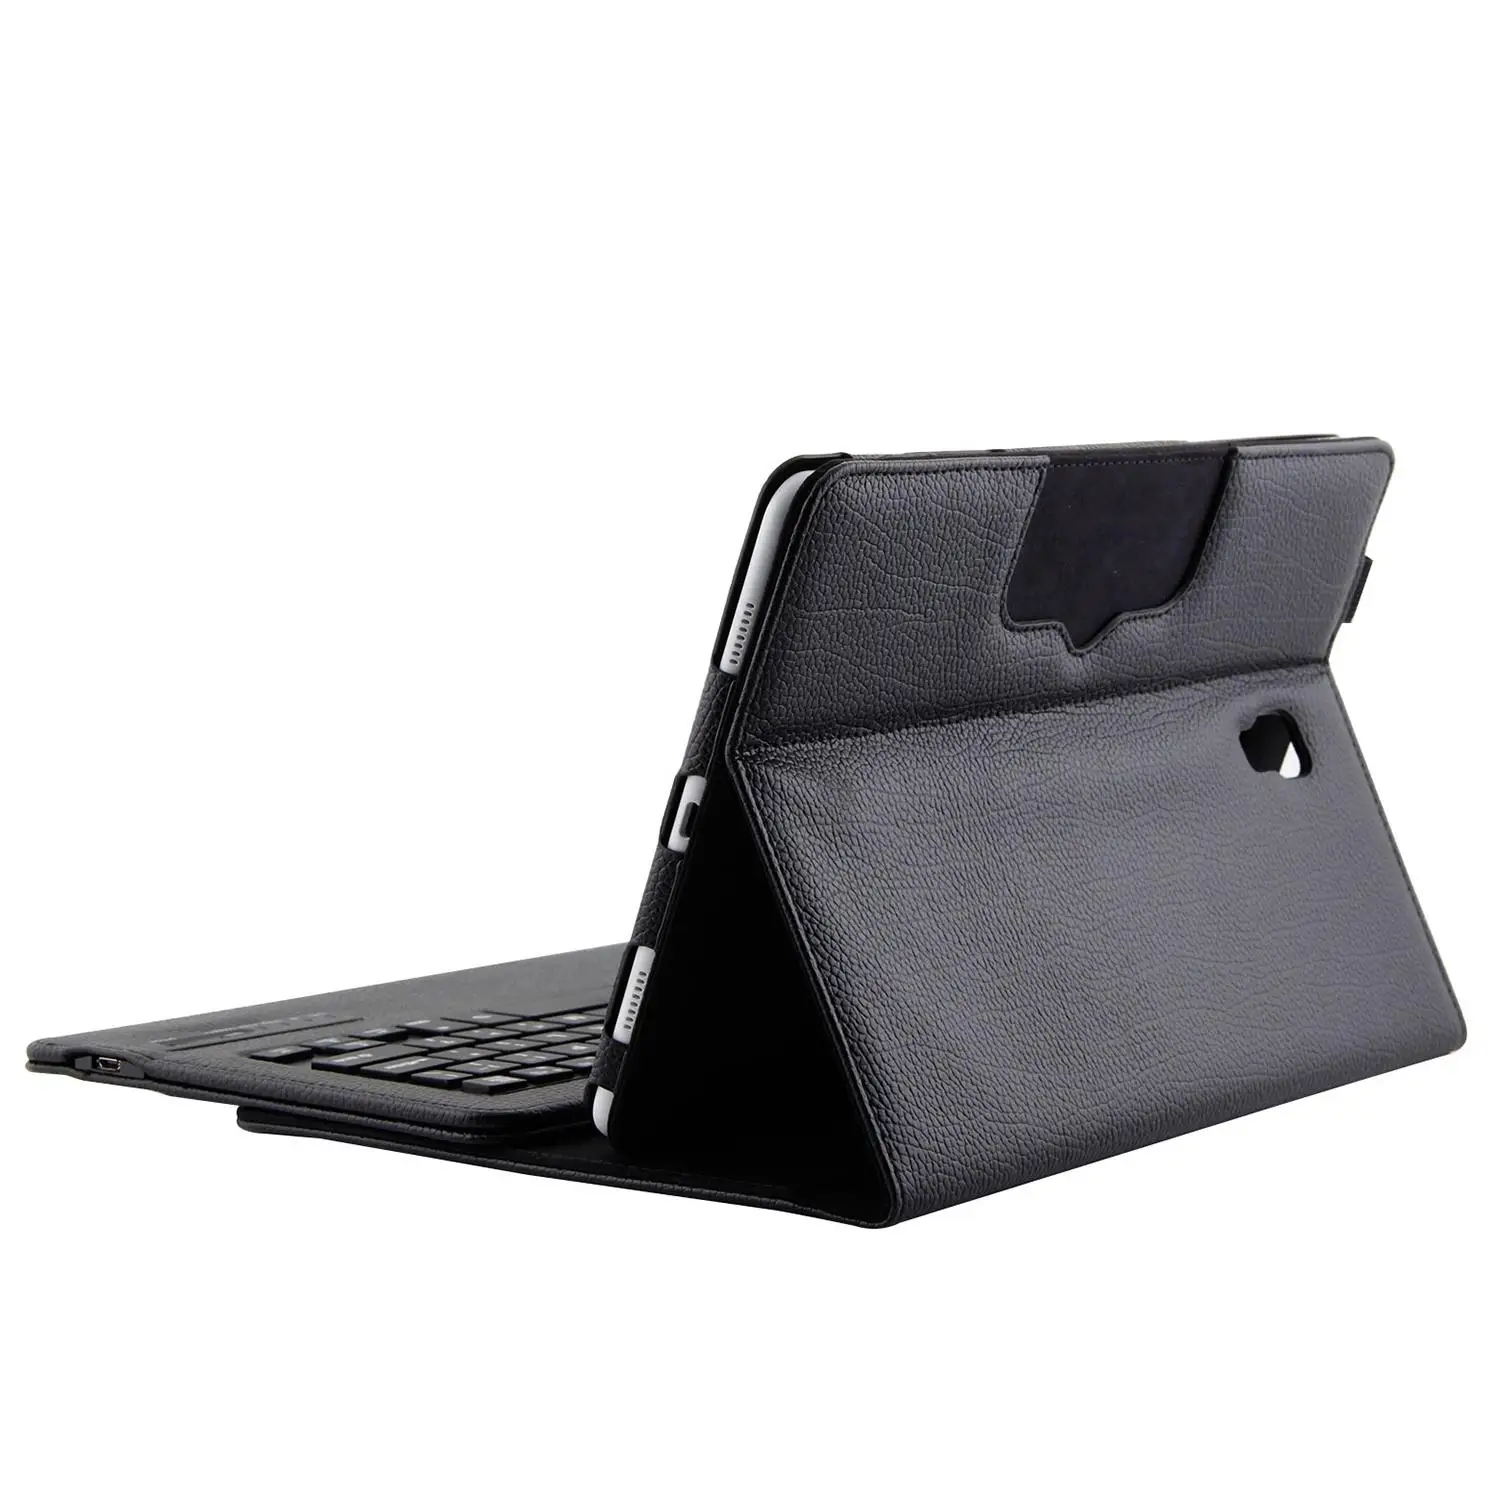 Черный чехол с клавиатурой для Samsung Galaxy Tab A 10 5 2018 модель Sm-T590/T595/T597 тонкий корпус